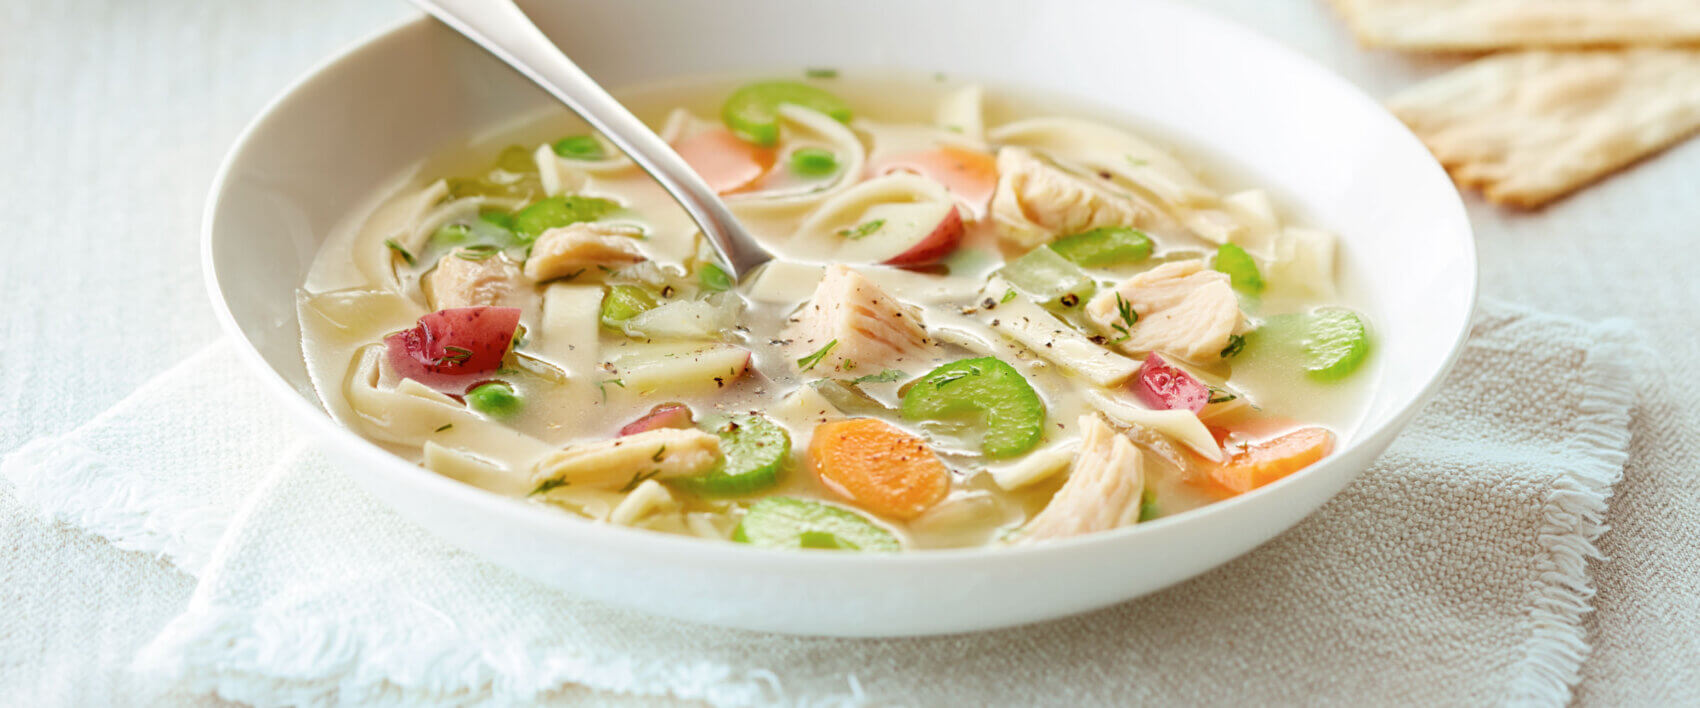 Chicken Vegetable Soup - VALLEY FRESH® chicken